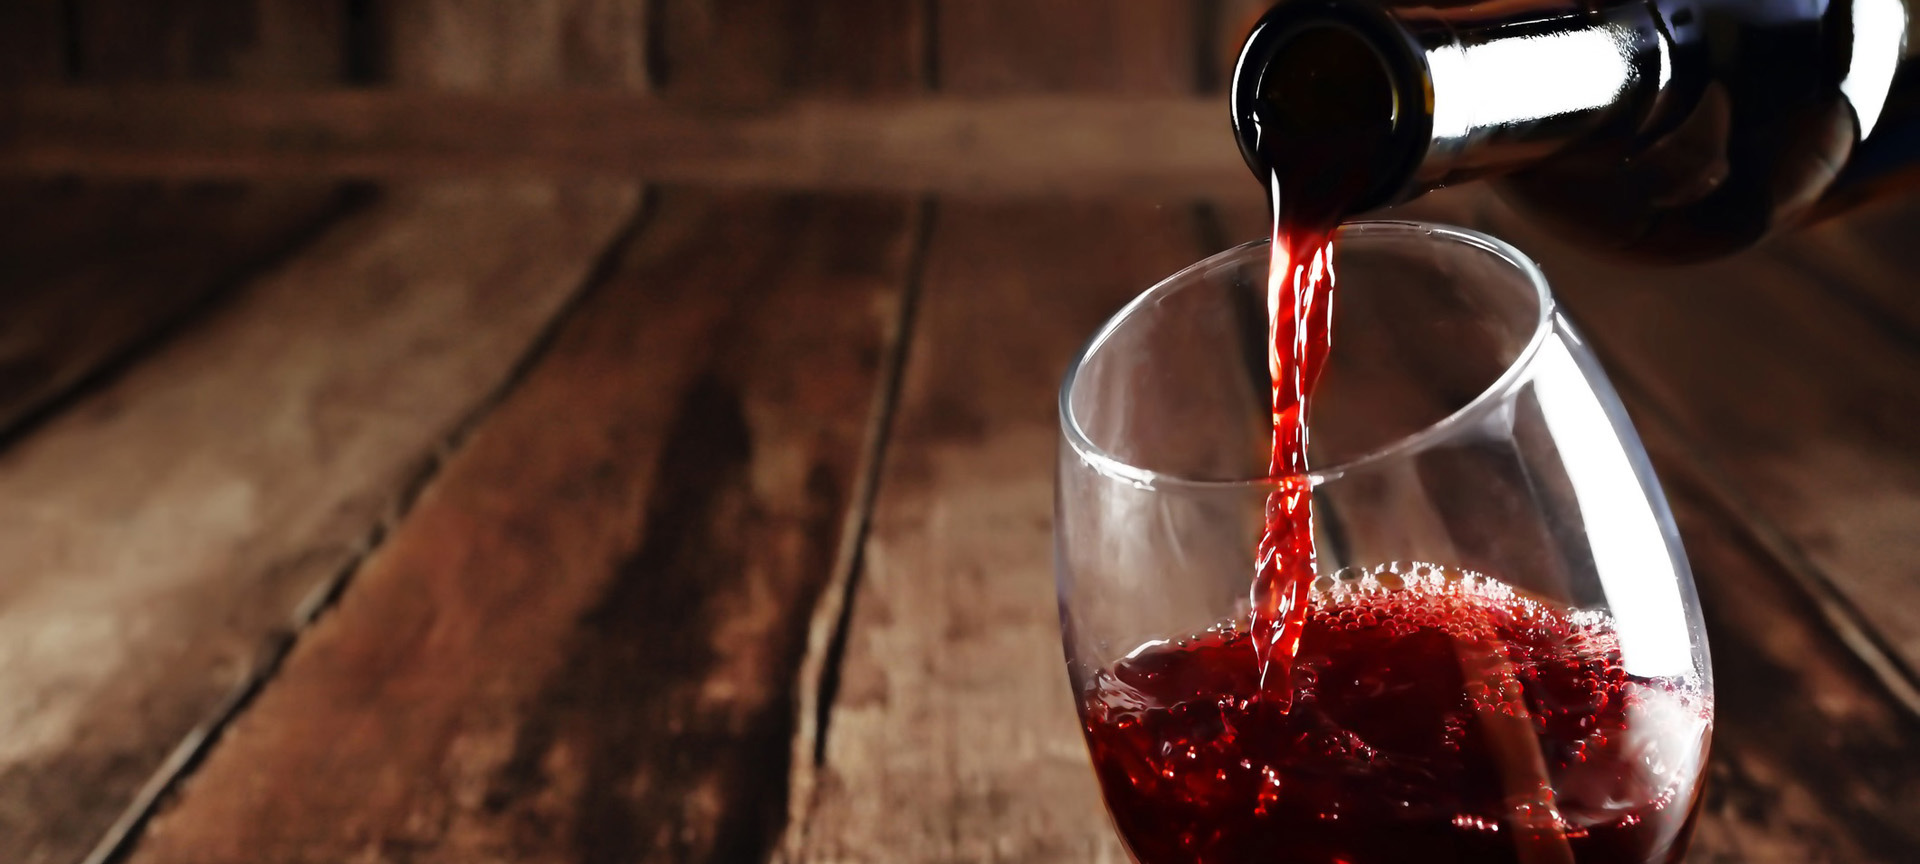 Rode wijn inschenken in glas.